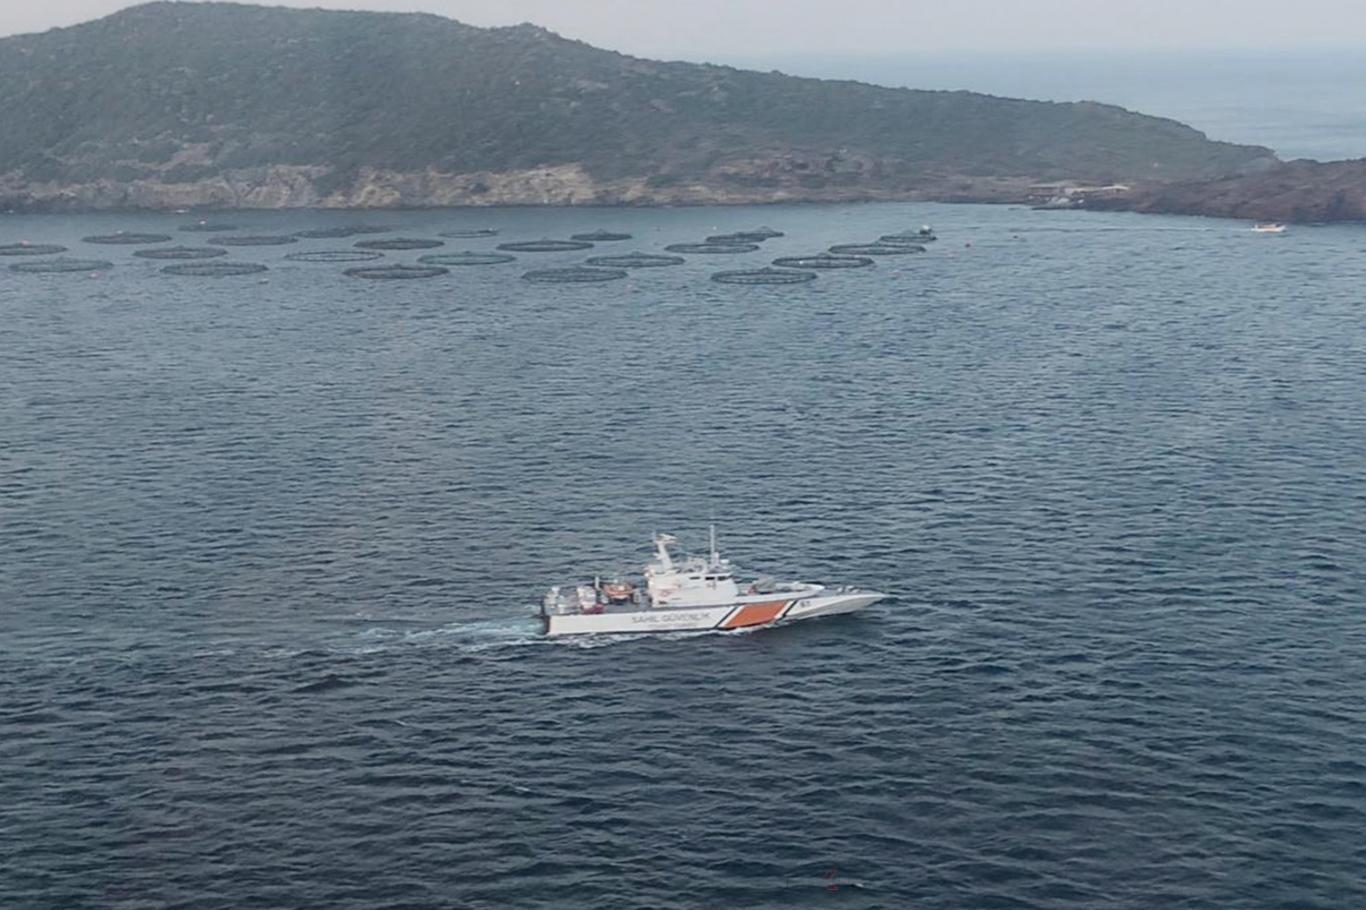 İzmir'de batan teknede ölü sayısı 6'ya yükseldi